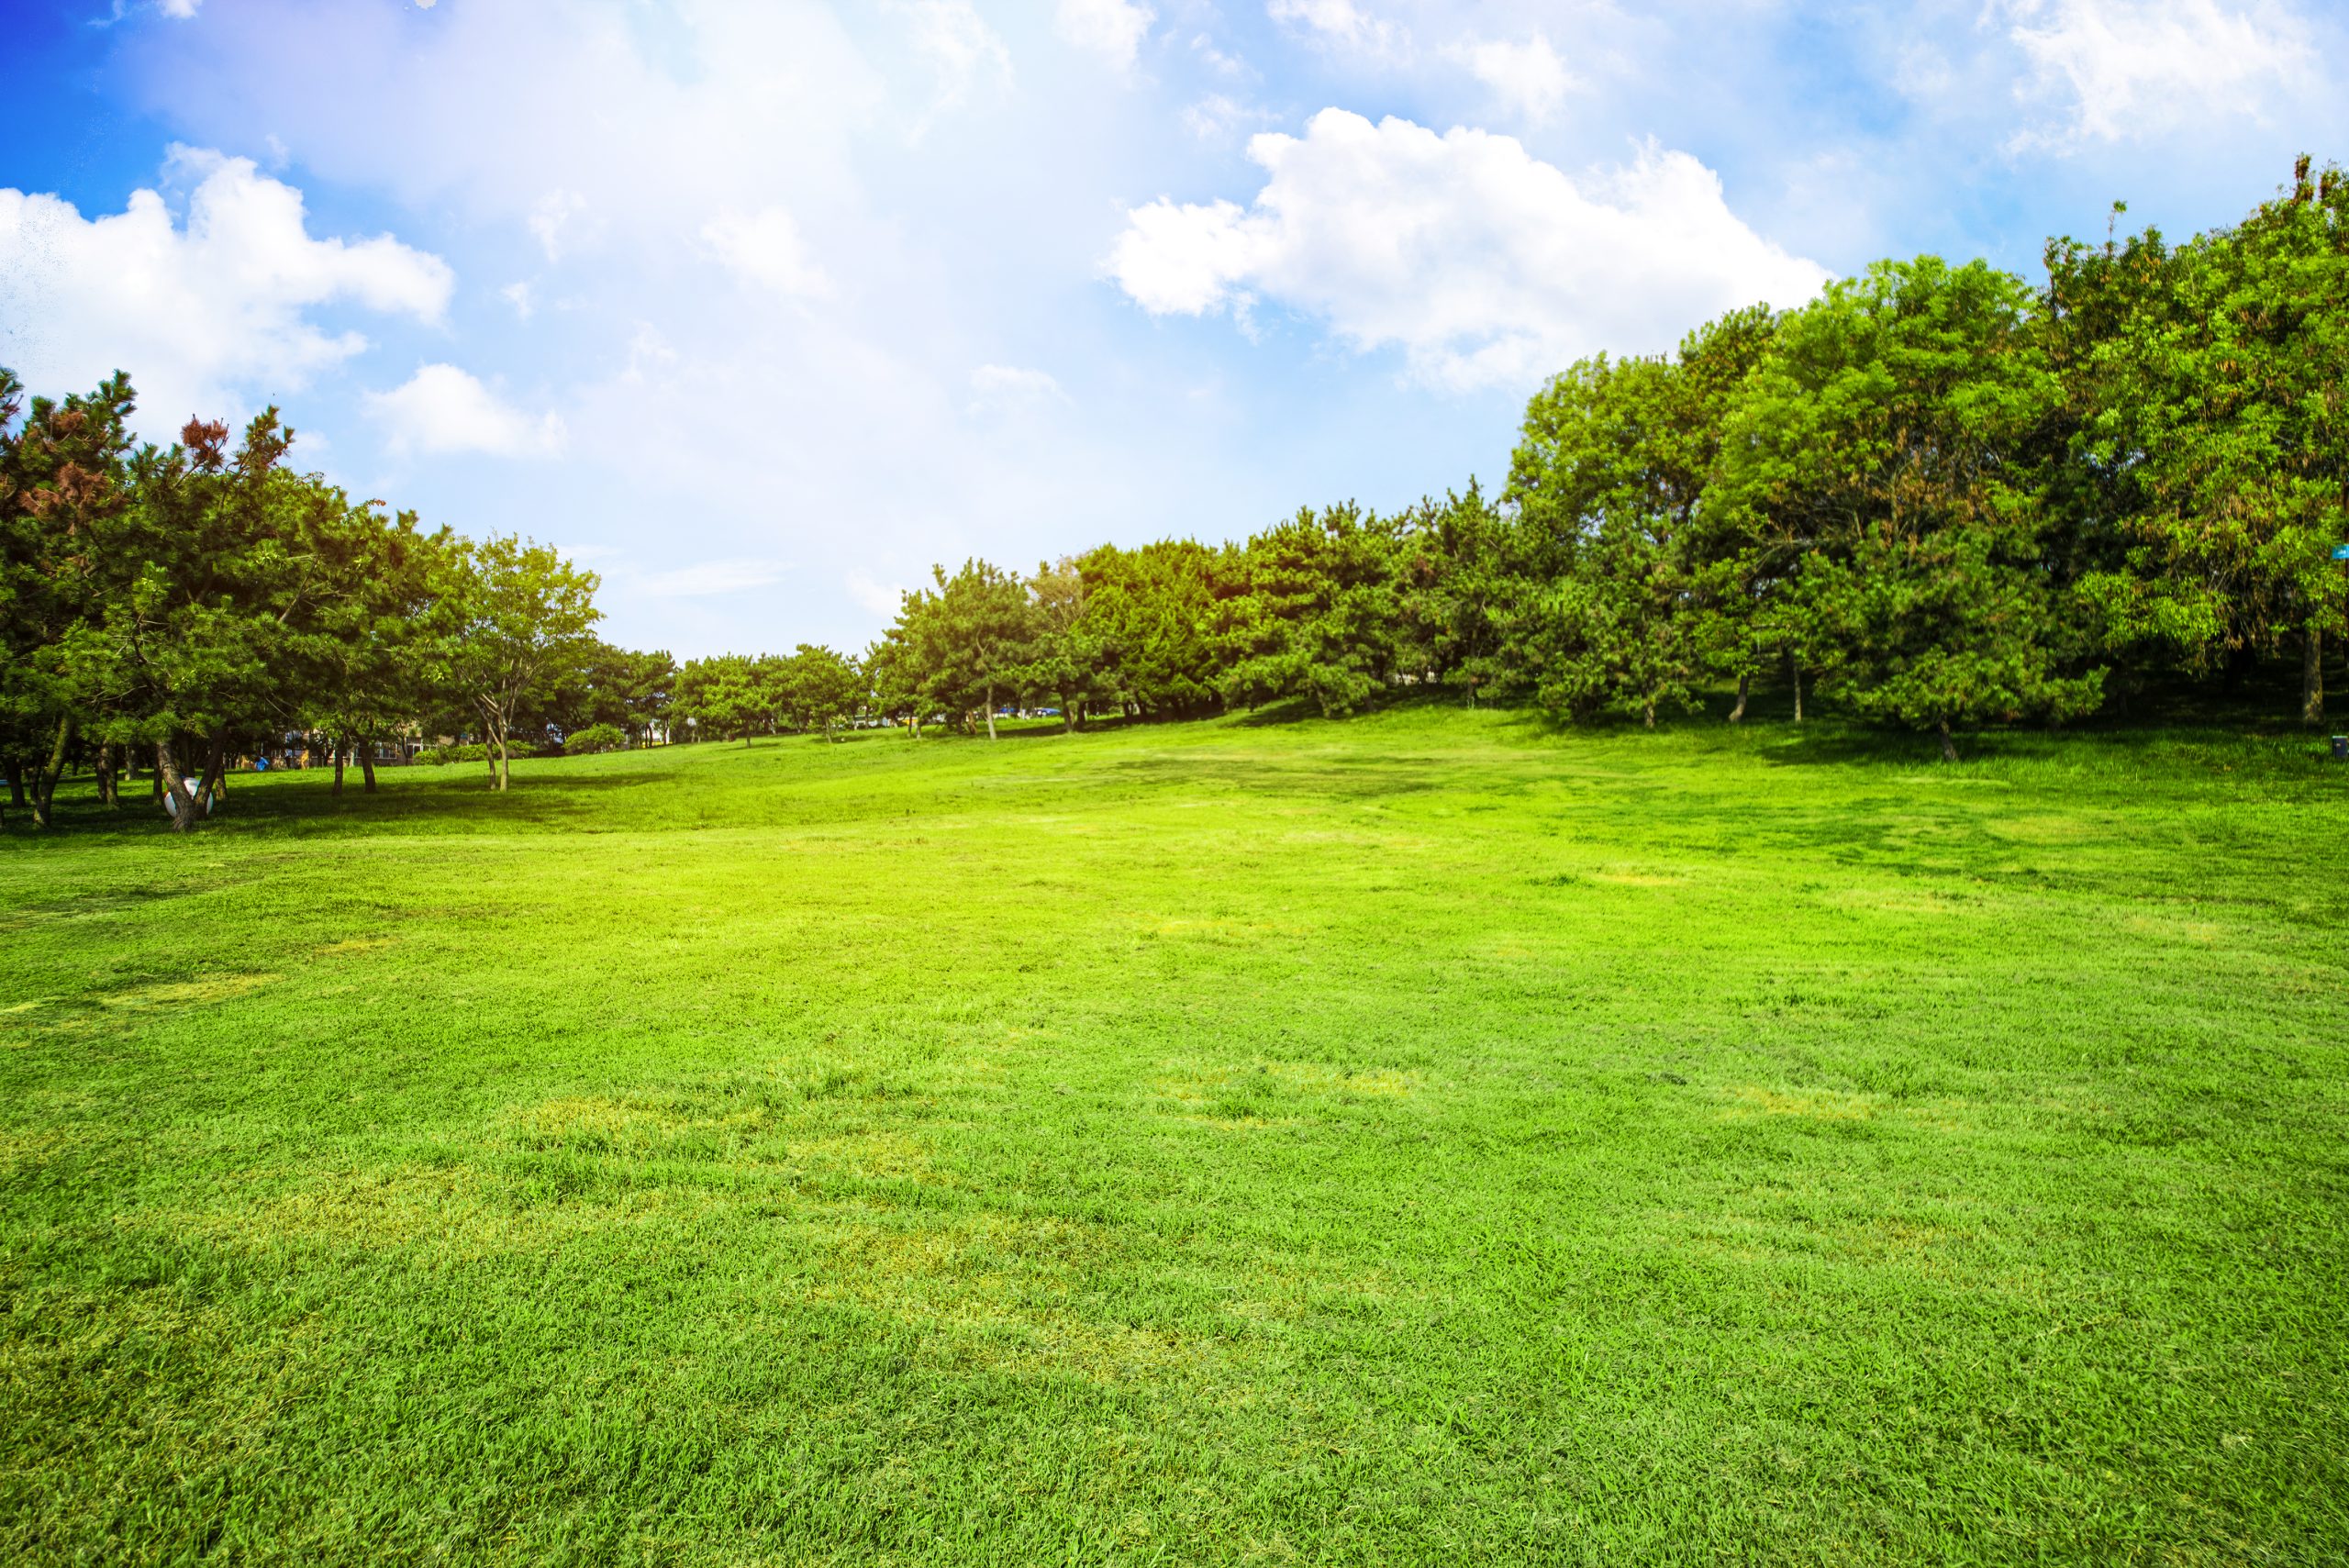 Paesaggio con pratura verde e alberi pieni di foglie verdi